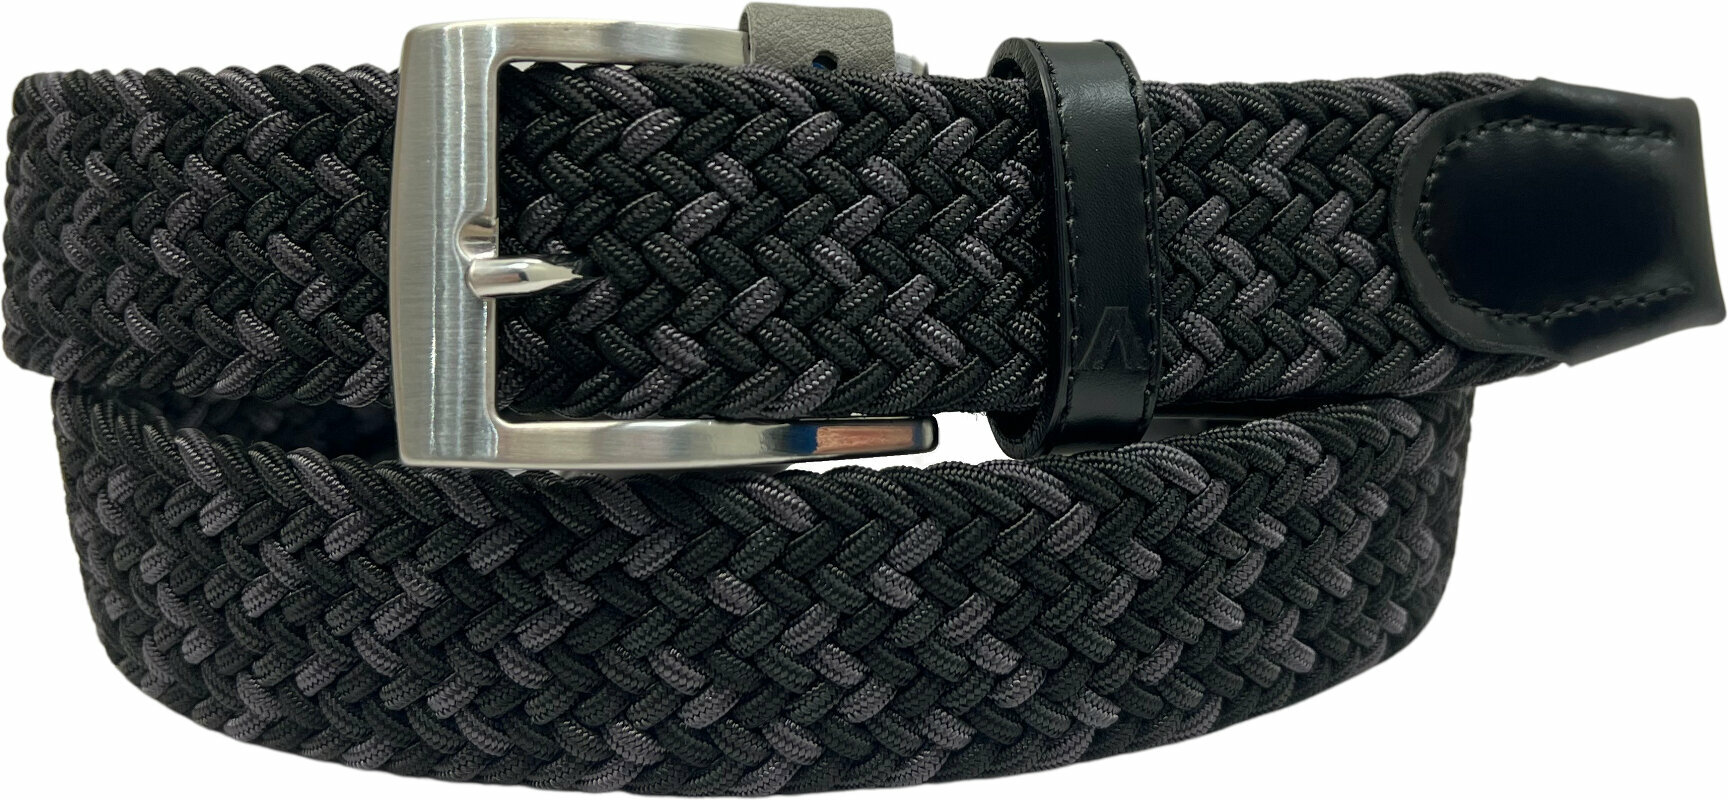 Belt Alberto Gürtel Multicolor Braided Belt Black/Grey 95